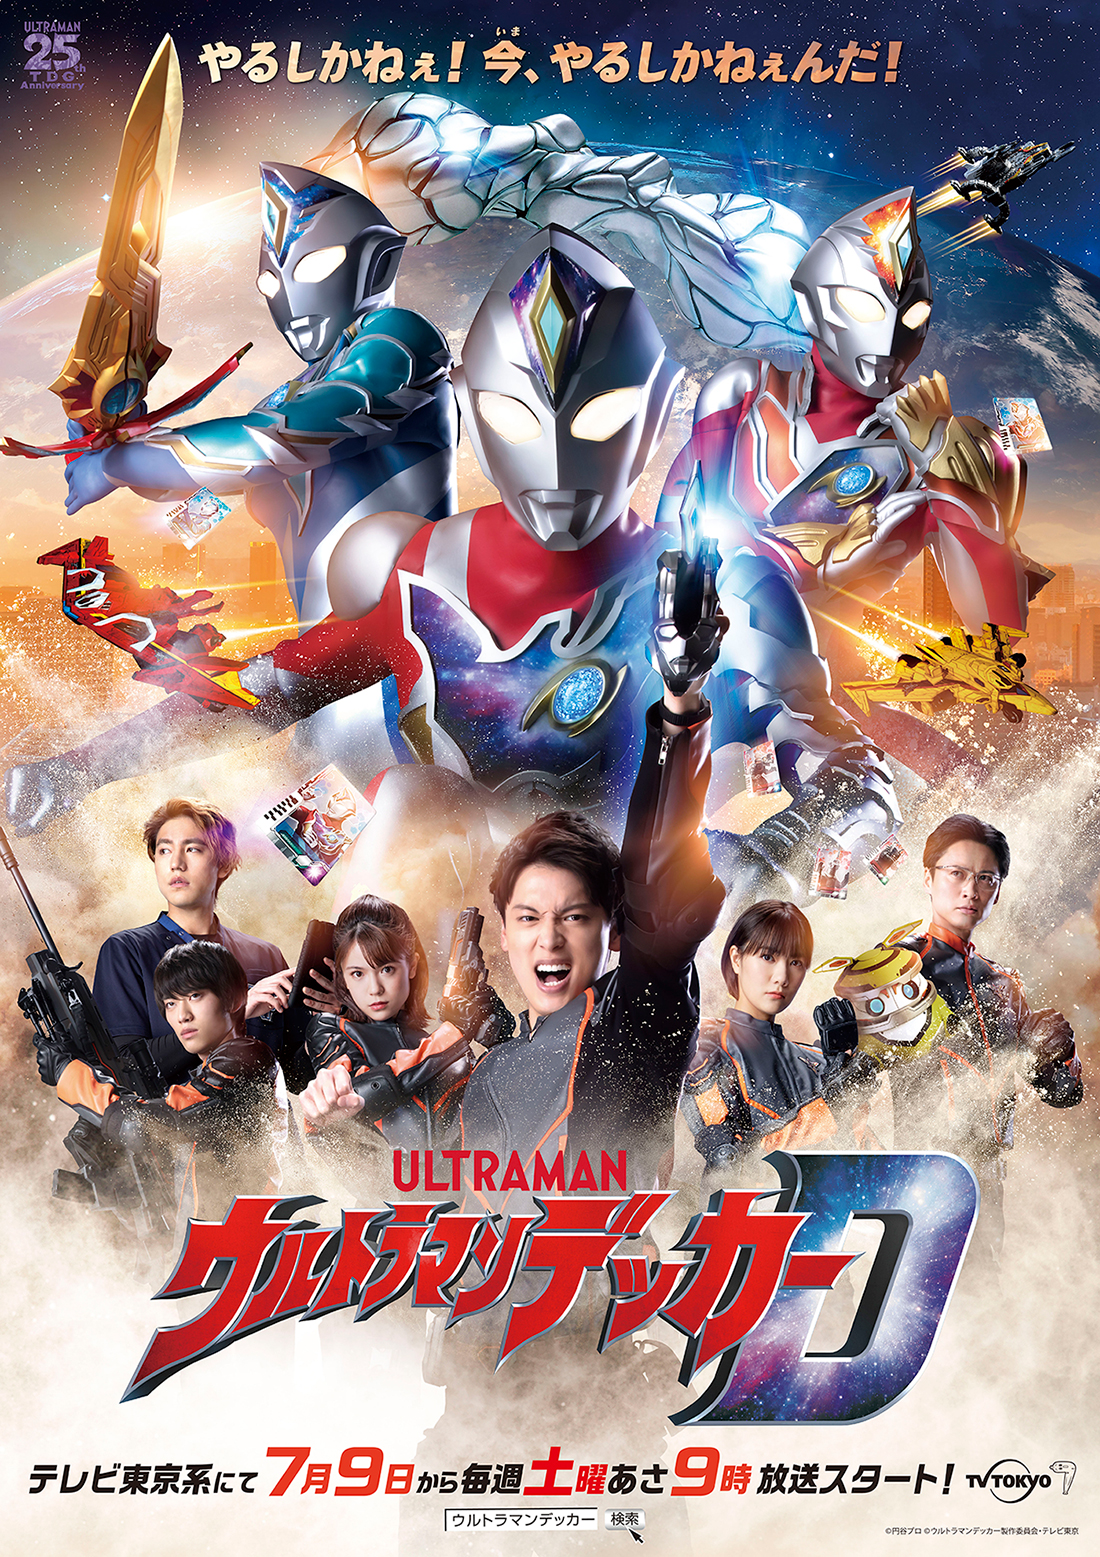 Nouvelle affiche d'Ultraman Decker avec le casting et Ultraman Decker devant la sphère. Au-dessus se trouve le slogan de la série.